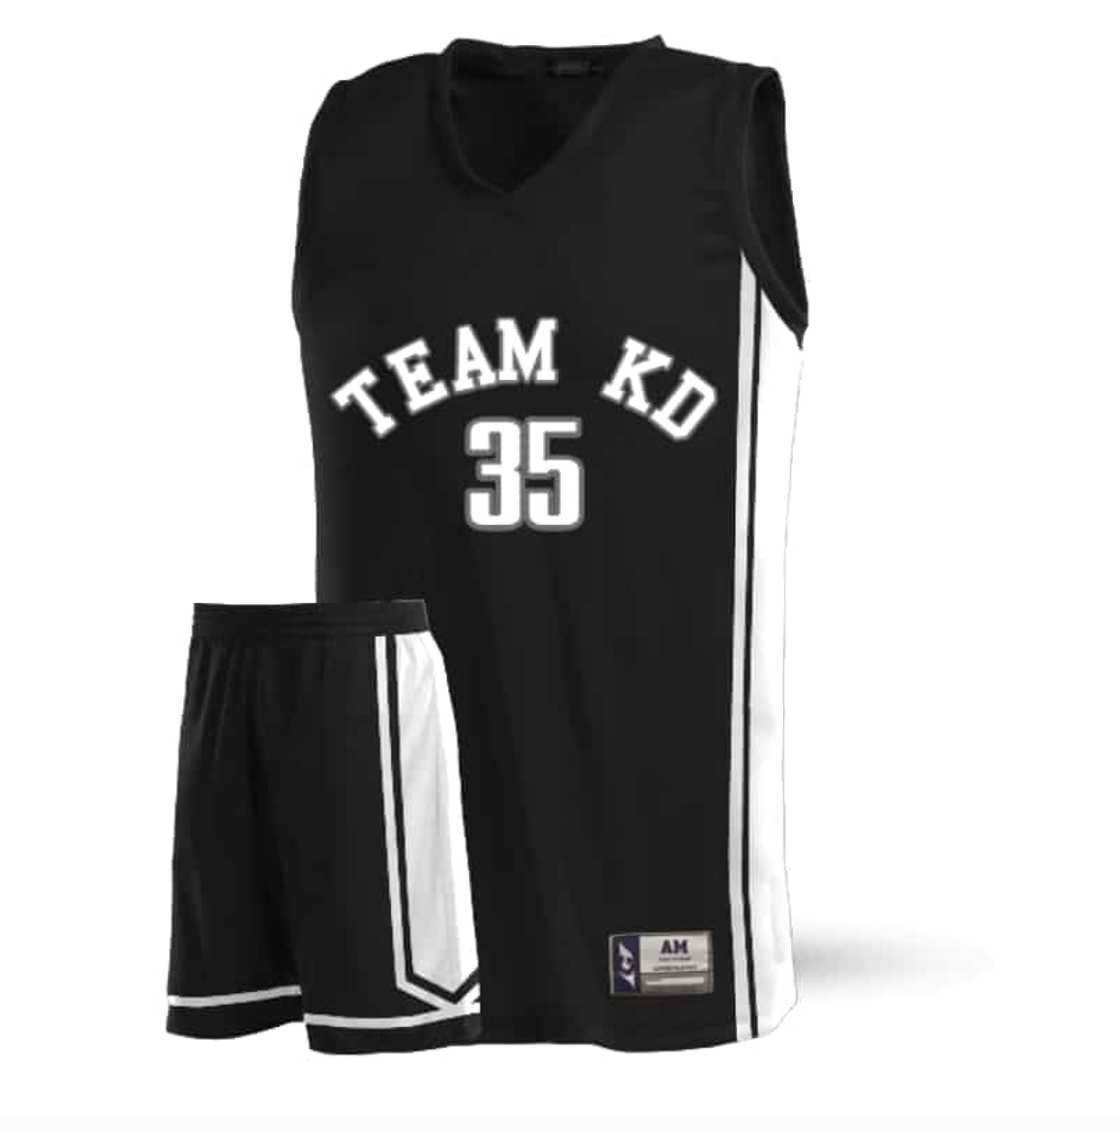 Basketball jersey design